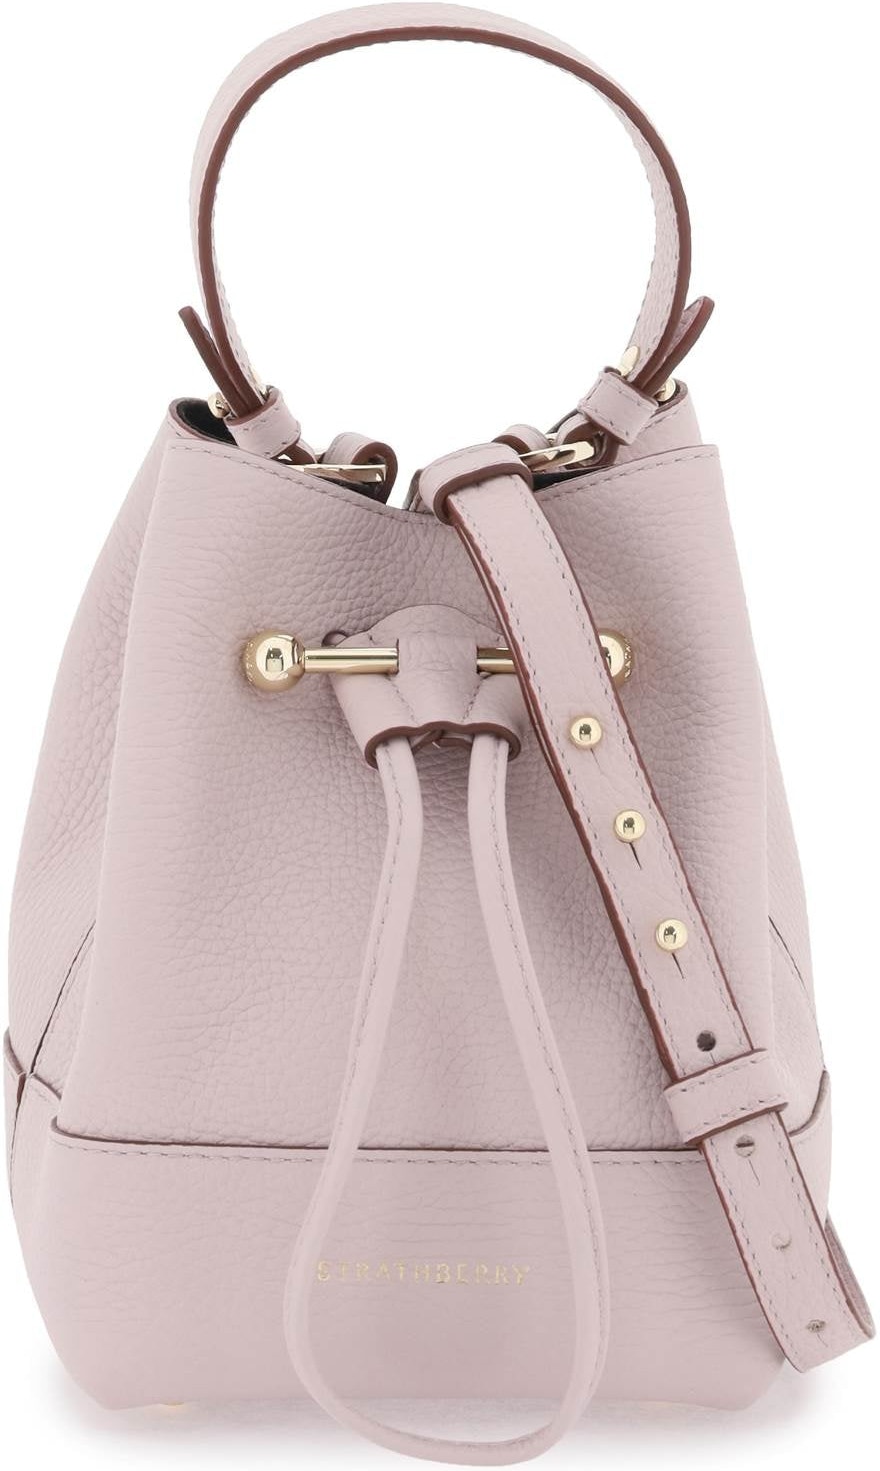 Strathberry Mini Lana Osette Bucket Bag